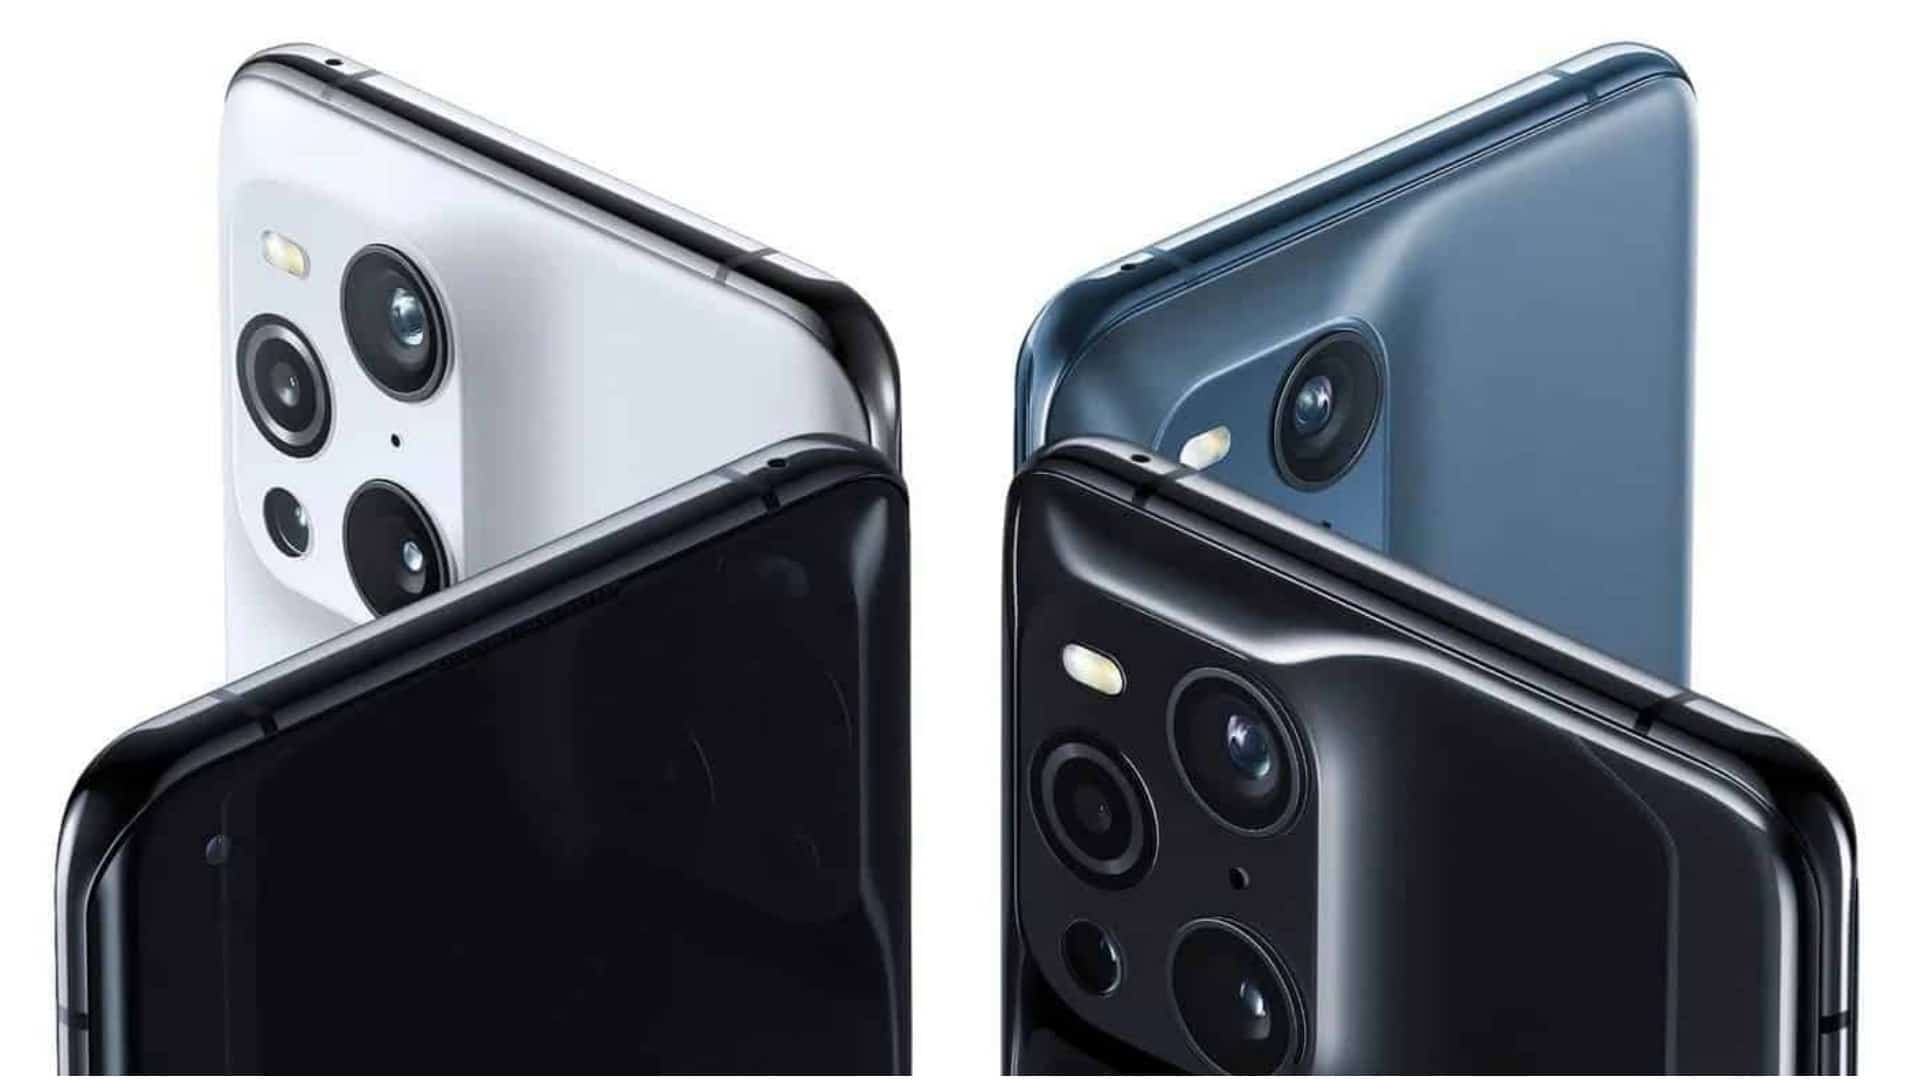 OPPO Find X3 Pro sẽ có thiết kế camera mạnh mẽ và gần giống với iPhone 12 Pro Max